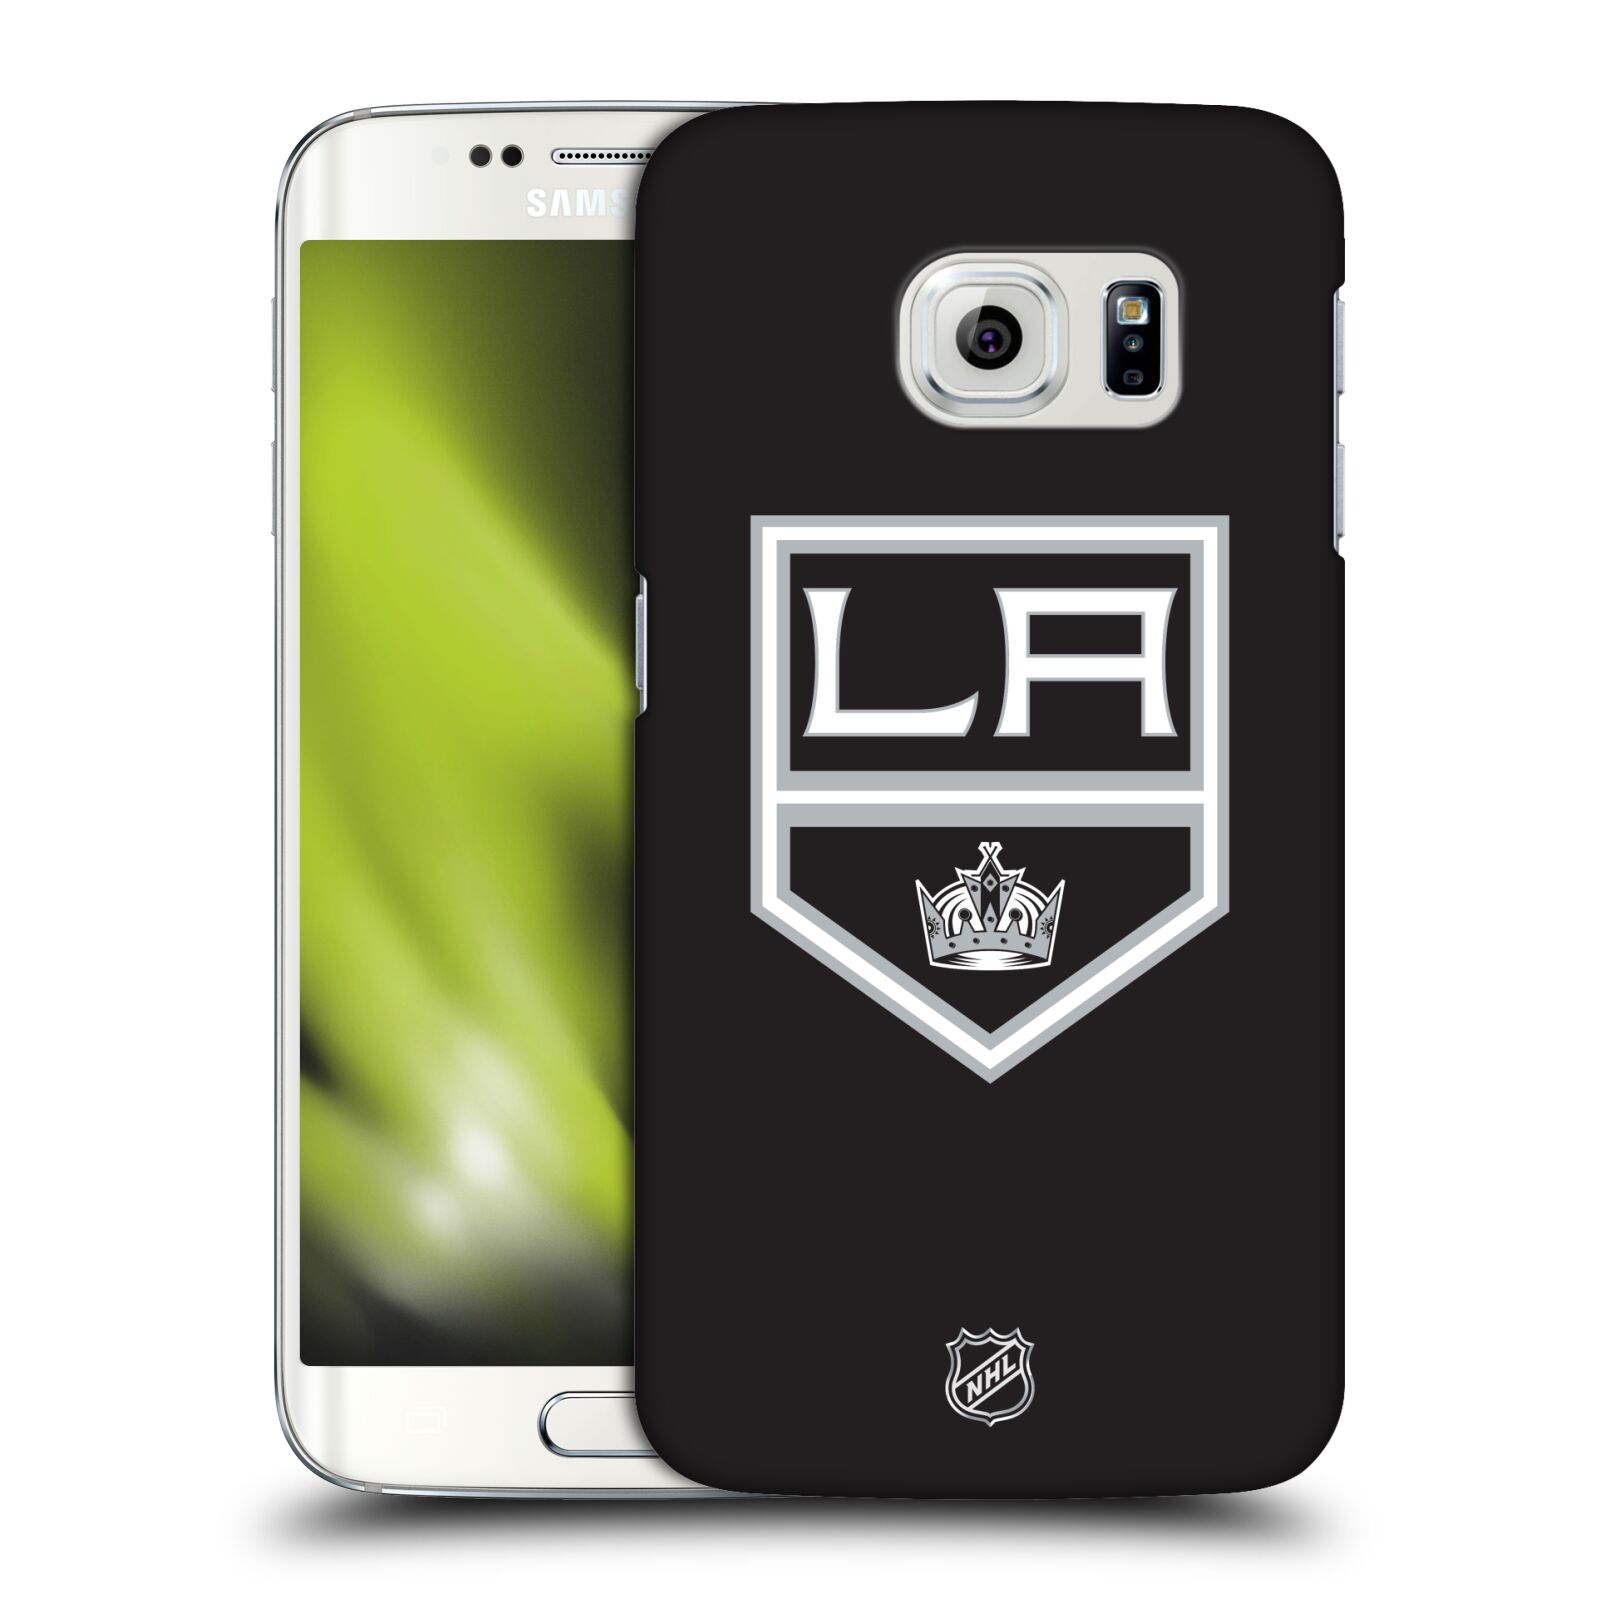 POUZDRO A OBAL NA MOBIL - Pouzdro na mobil Samsung Galaxy S6 EDGE - HEAD CASE - Hokej NHL - Los Angeles Kings - znak - Pouzdra, obaly, kryty a tvrzená skla na mobilní telefony